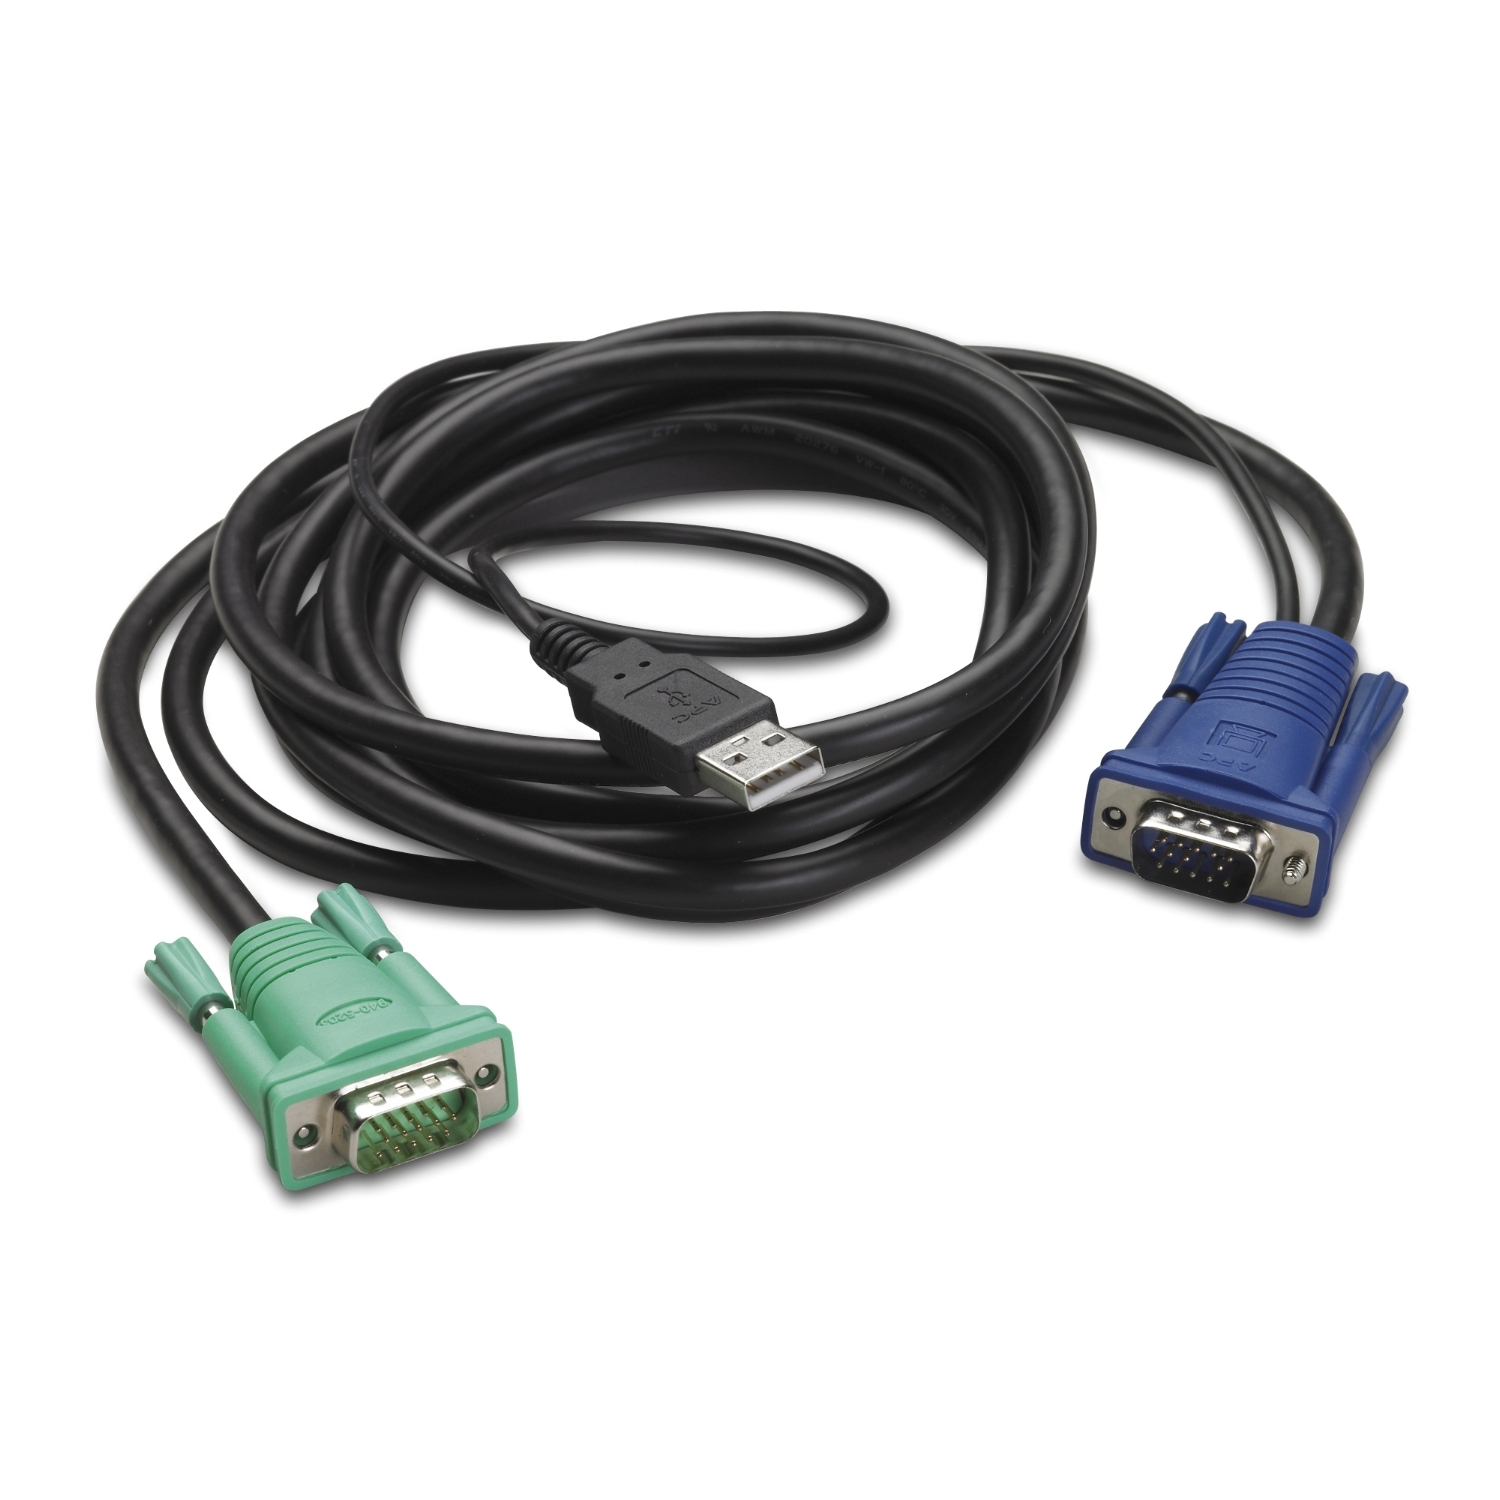 promedias AG - professional media systems. BD-24-J-USB3-213-SX-42-201A   BD-24 USB Einbaubuchse, Kunststoffgehäuse, mit Schutzdeckel und  Montagematerial IP65